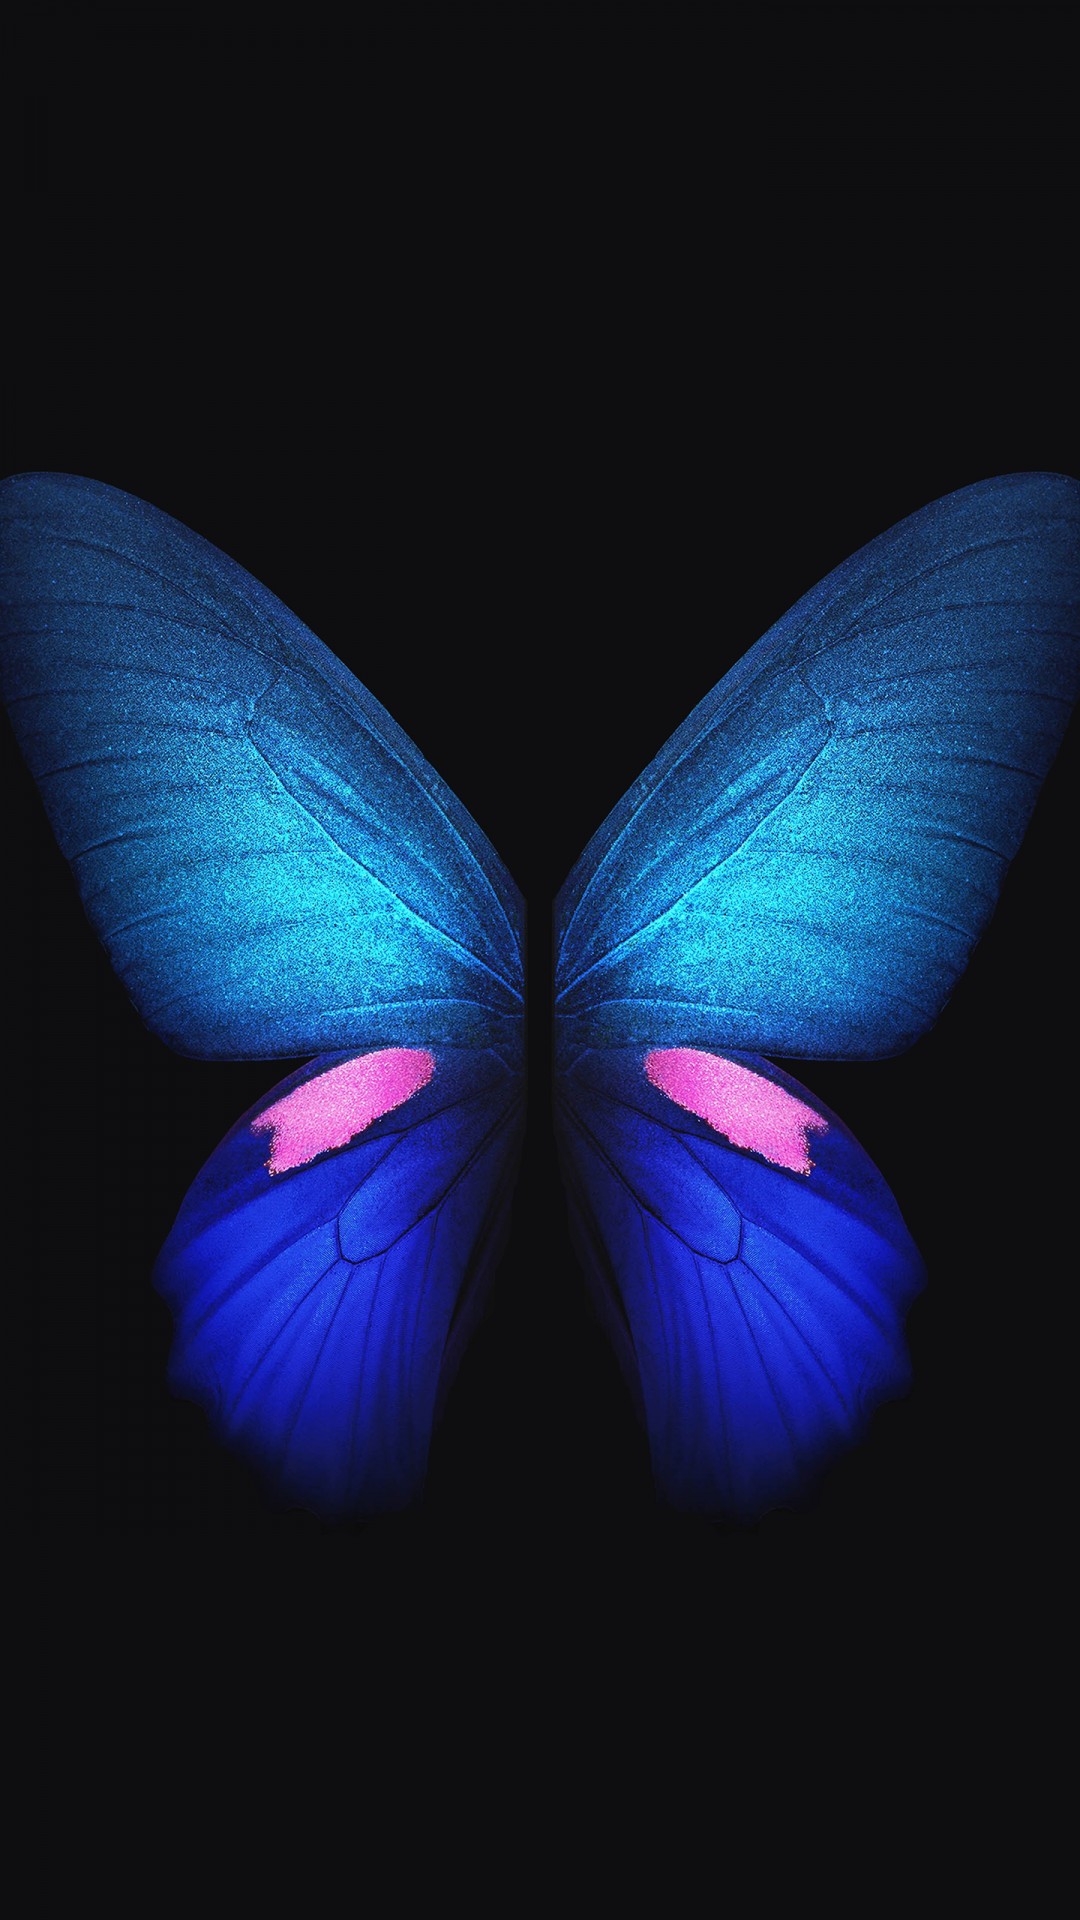 Butterfly 4k - HD Wallpaper 